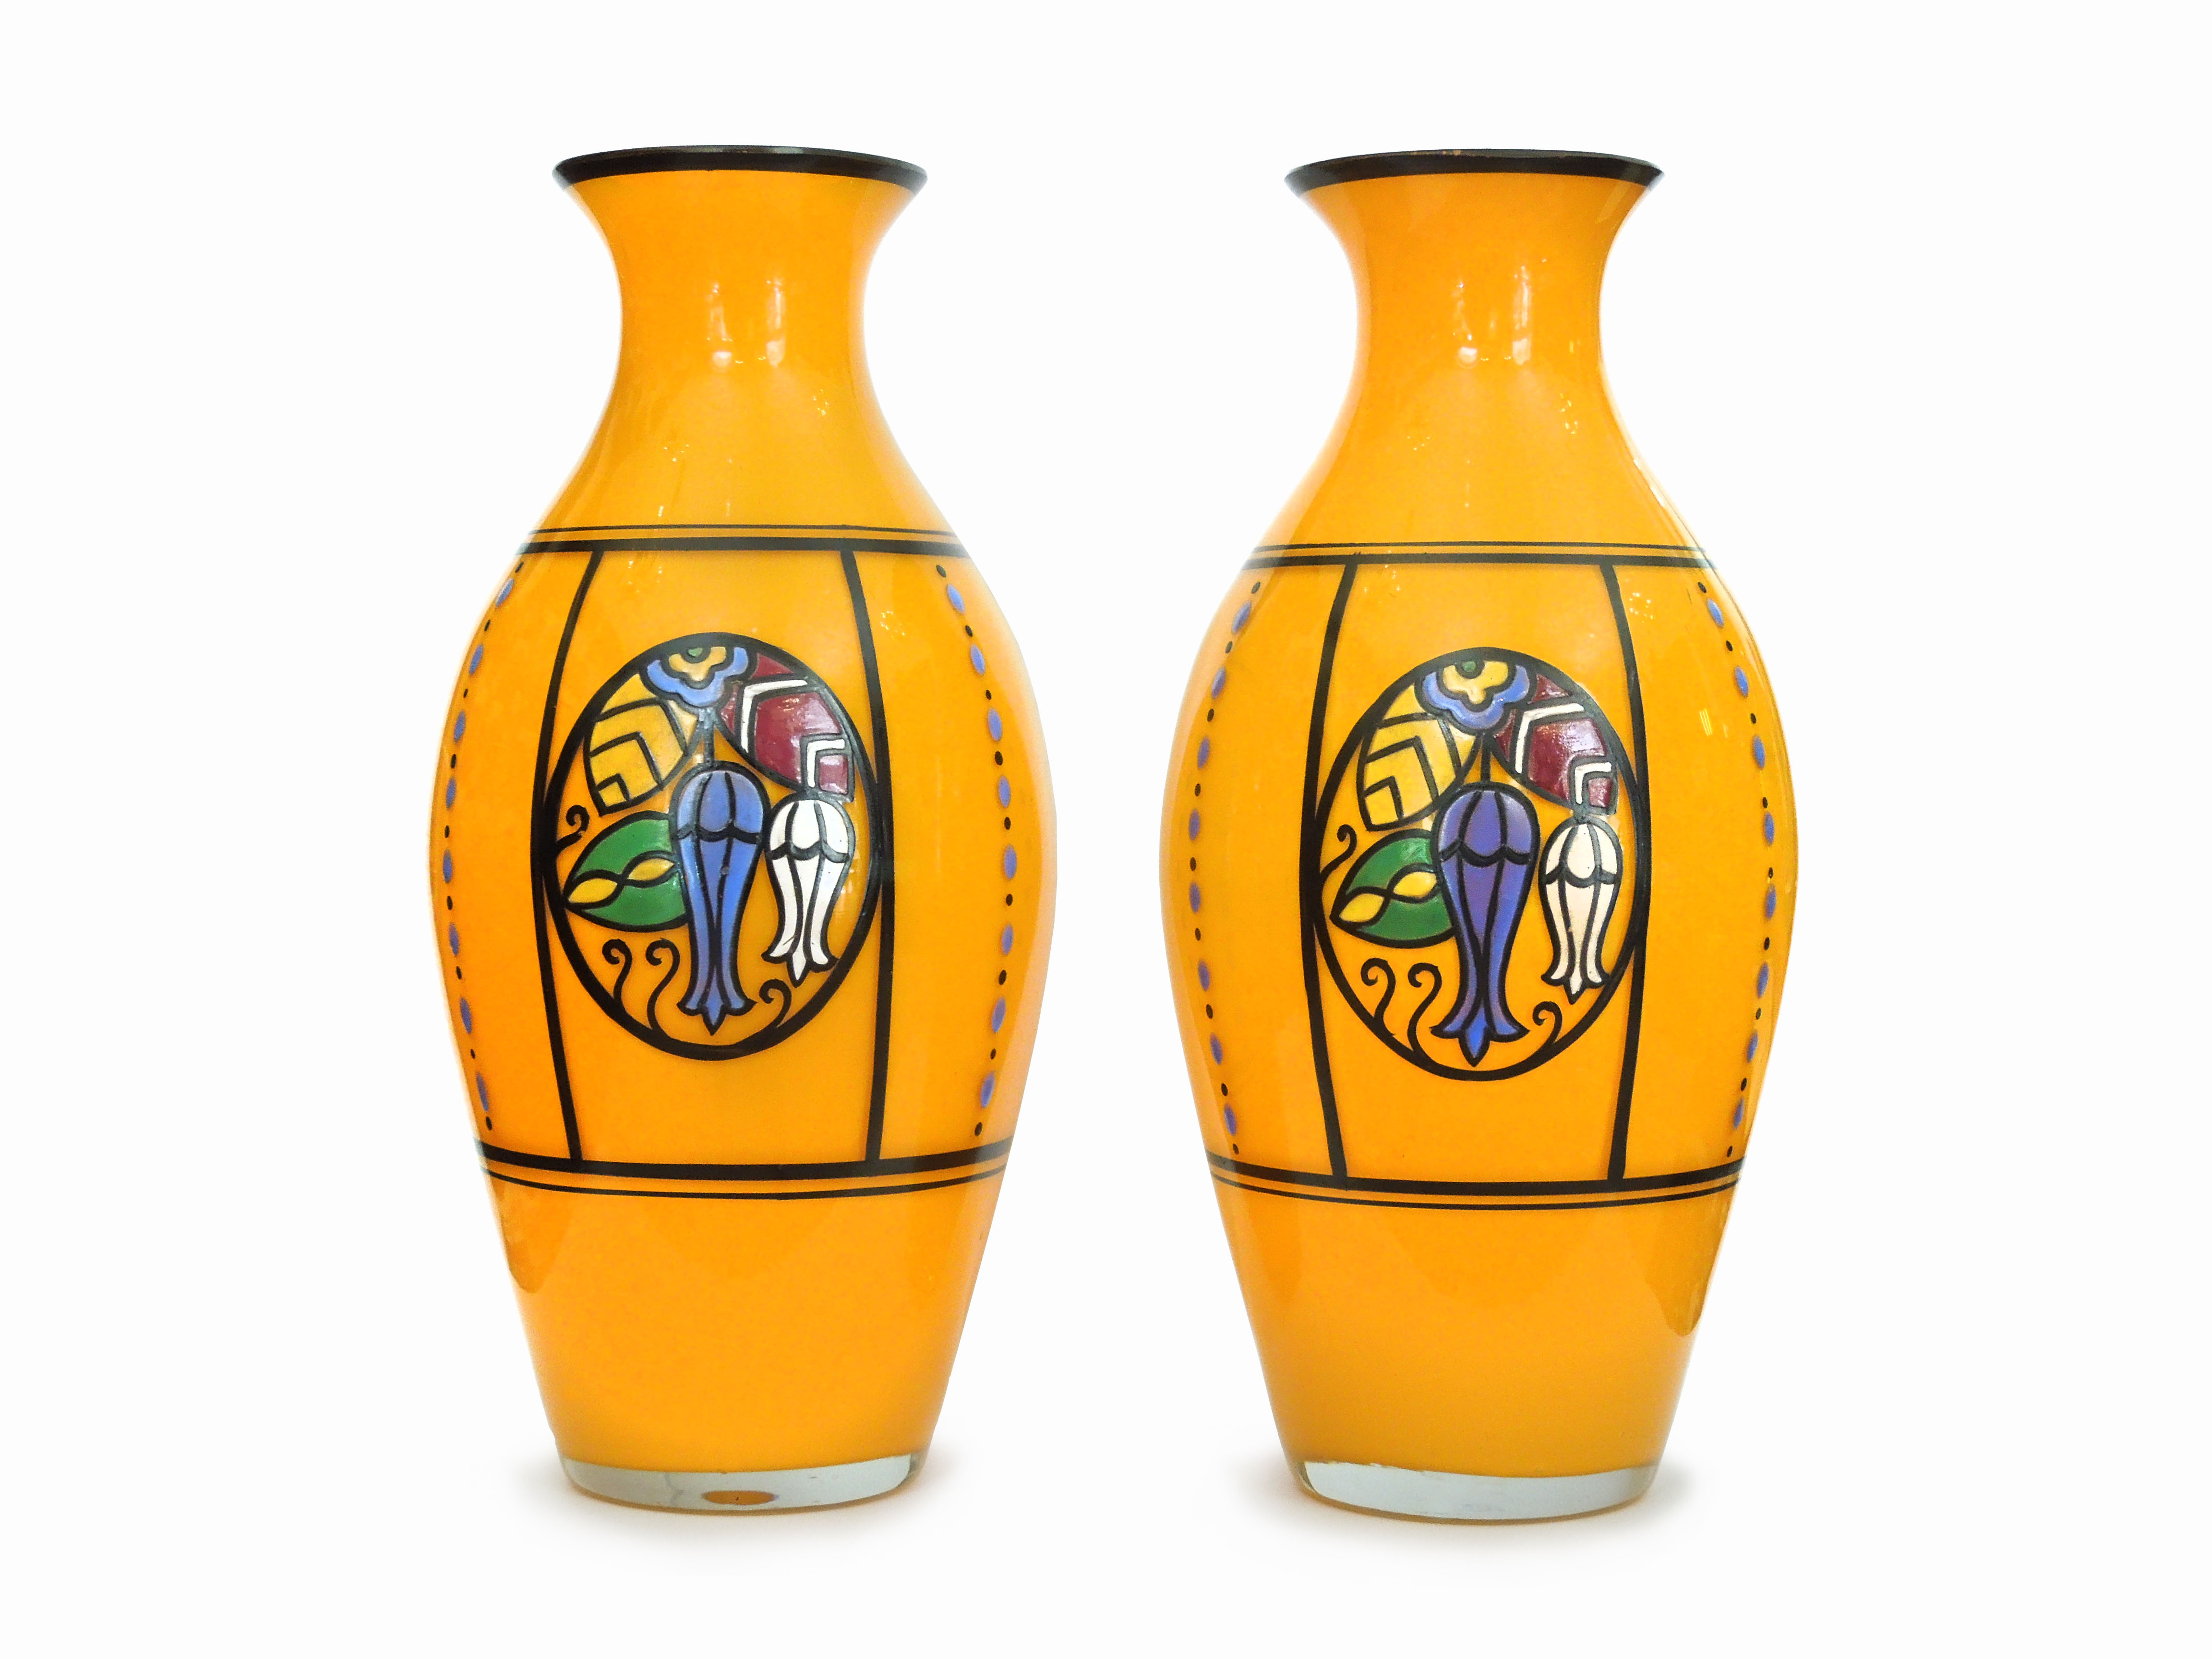 A pair of Art Nouveau vases